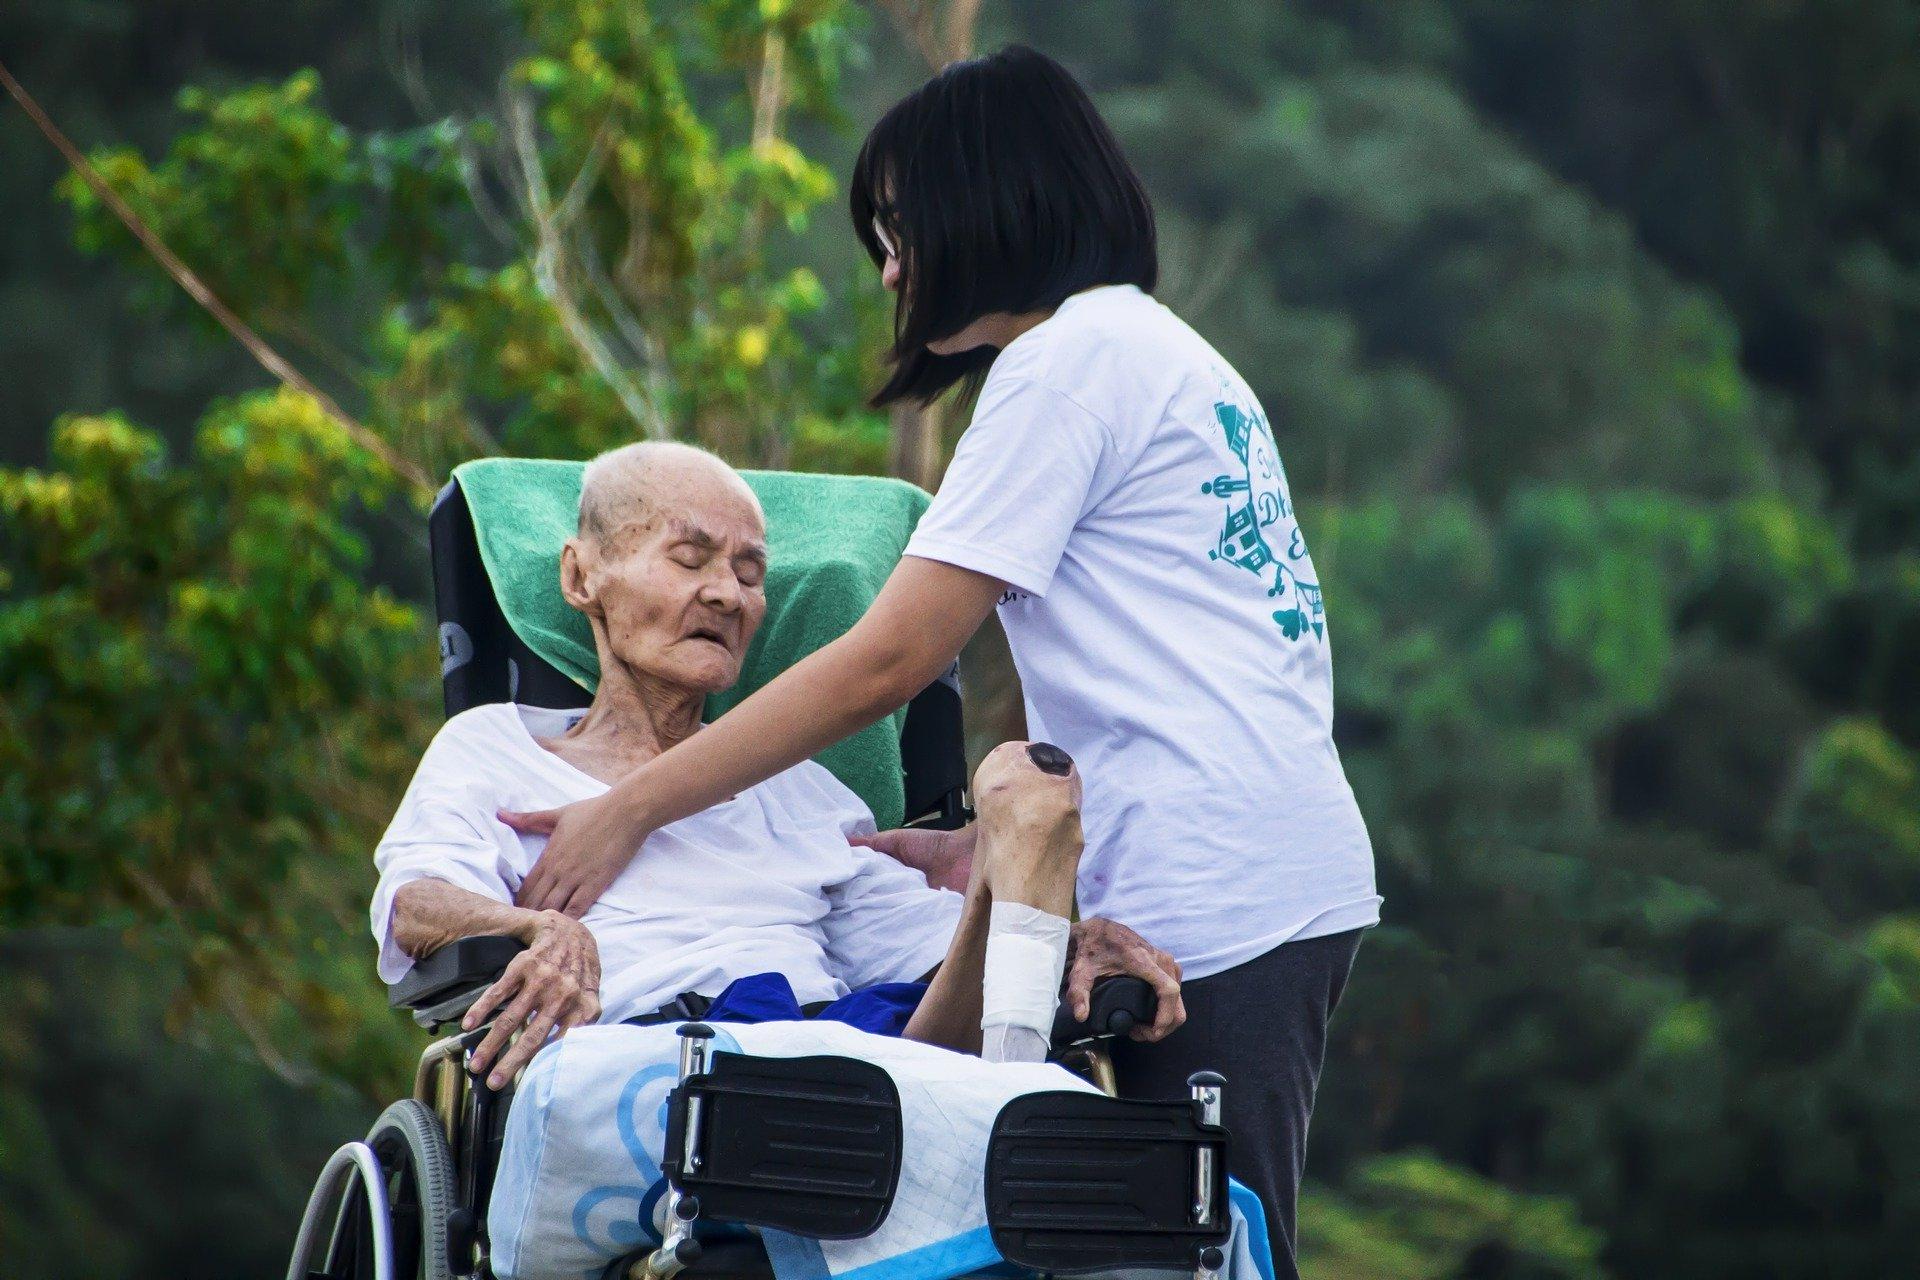  رعاية كبار السن طرق الرعاية المثالية لكبار السن